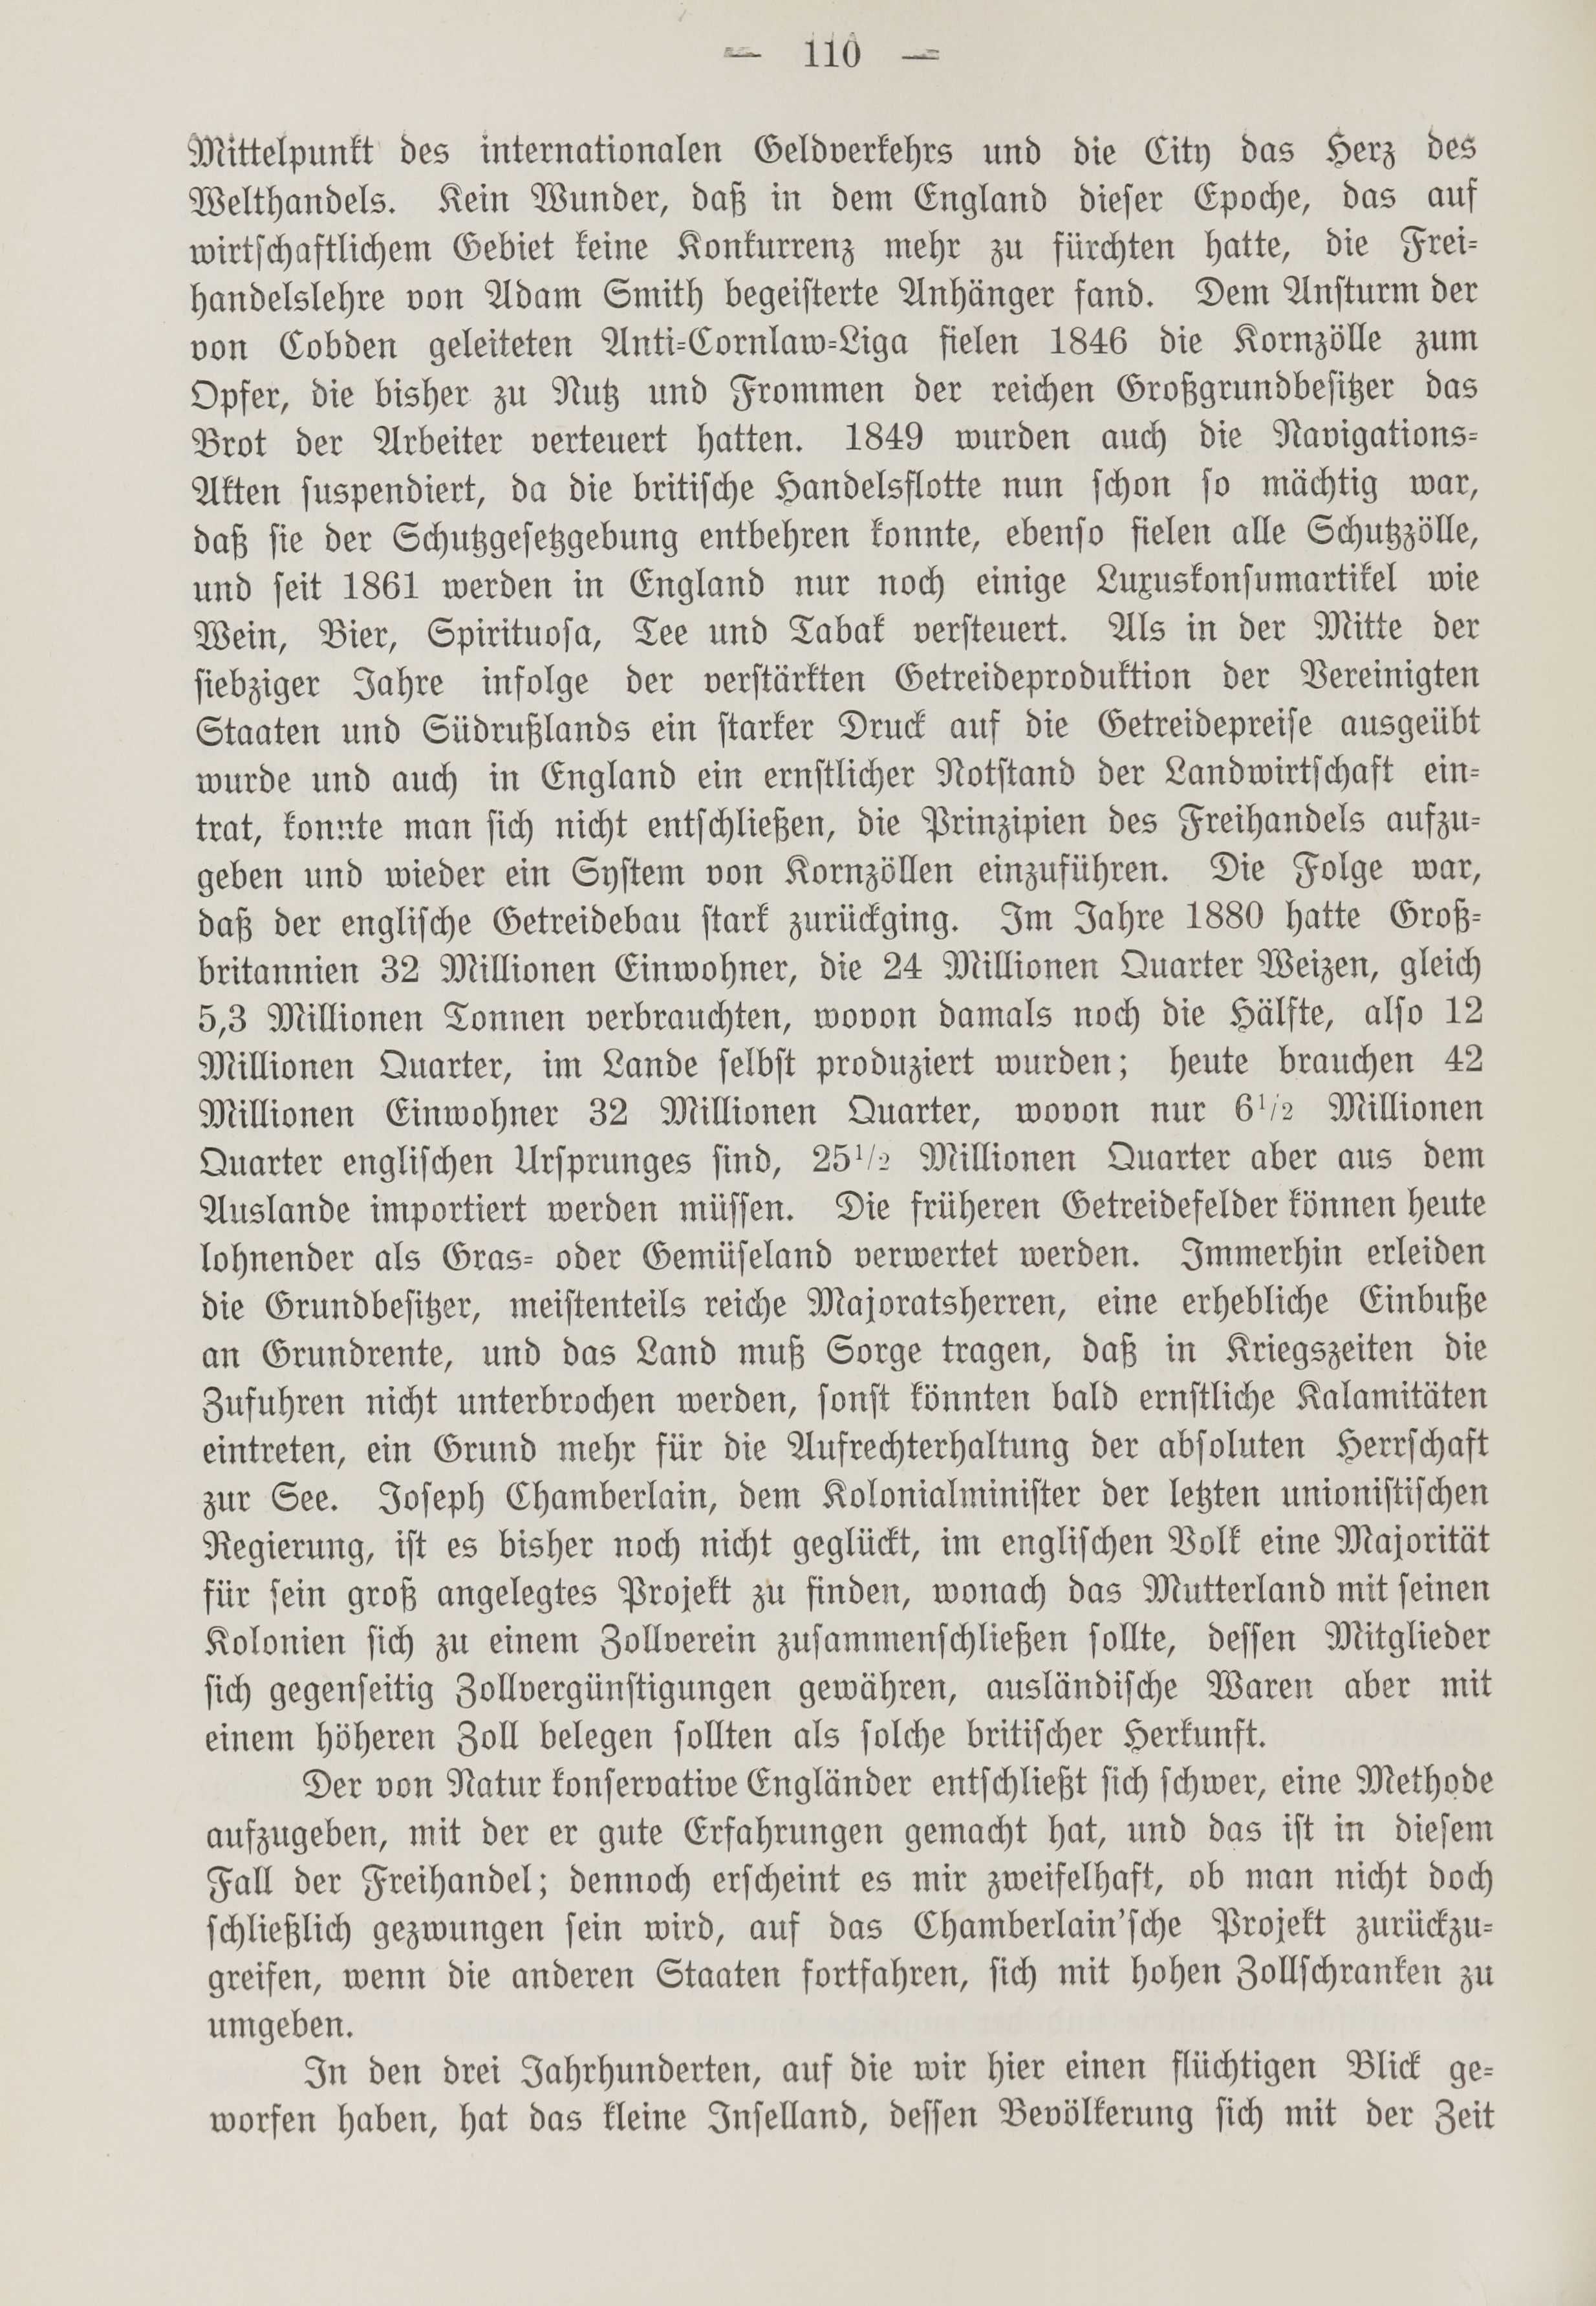 Deutsche Monatsschrift für Russland [1] (1912) | 118. (110) Haupttext